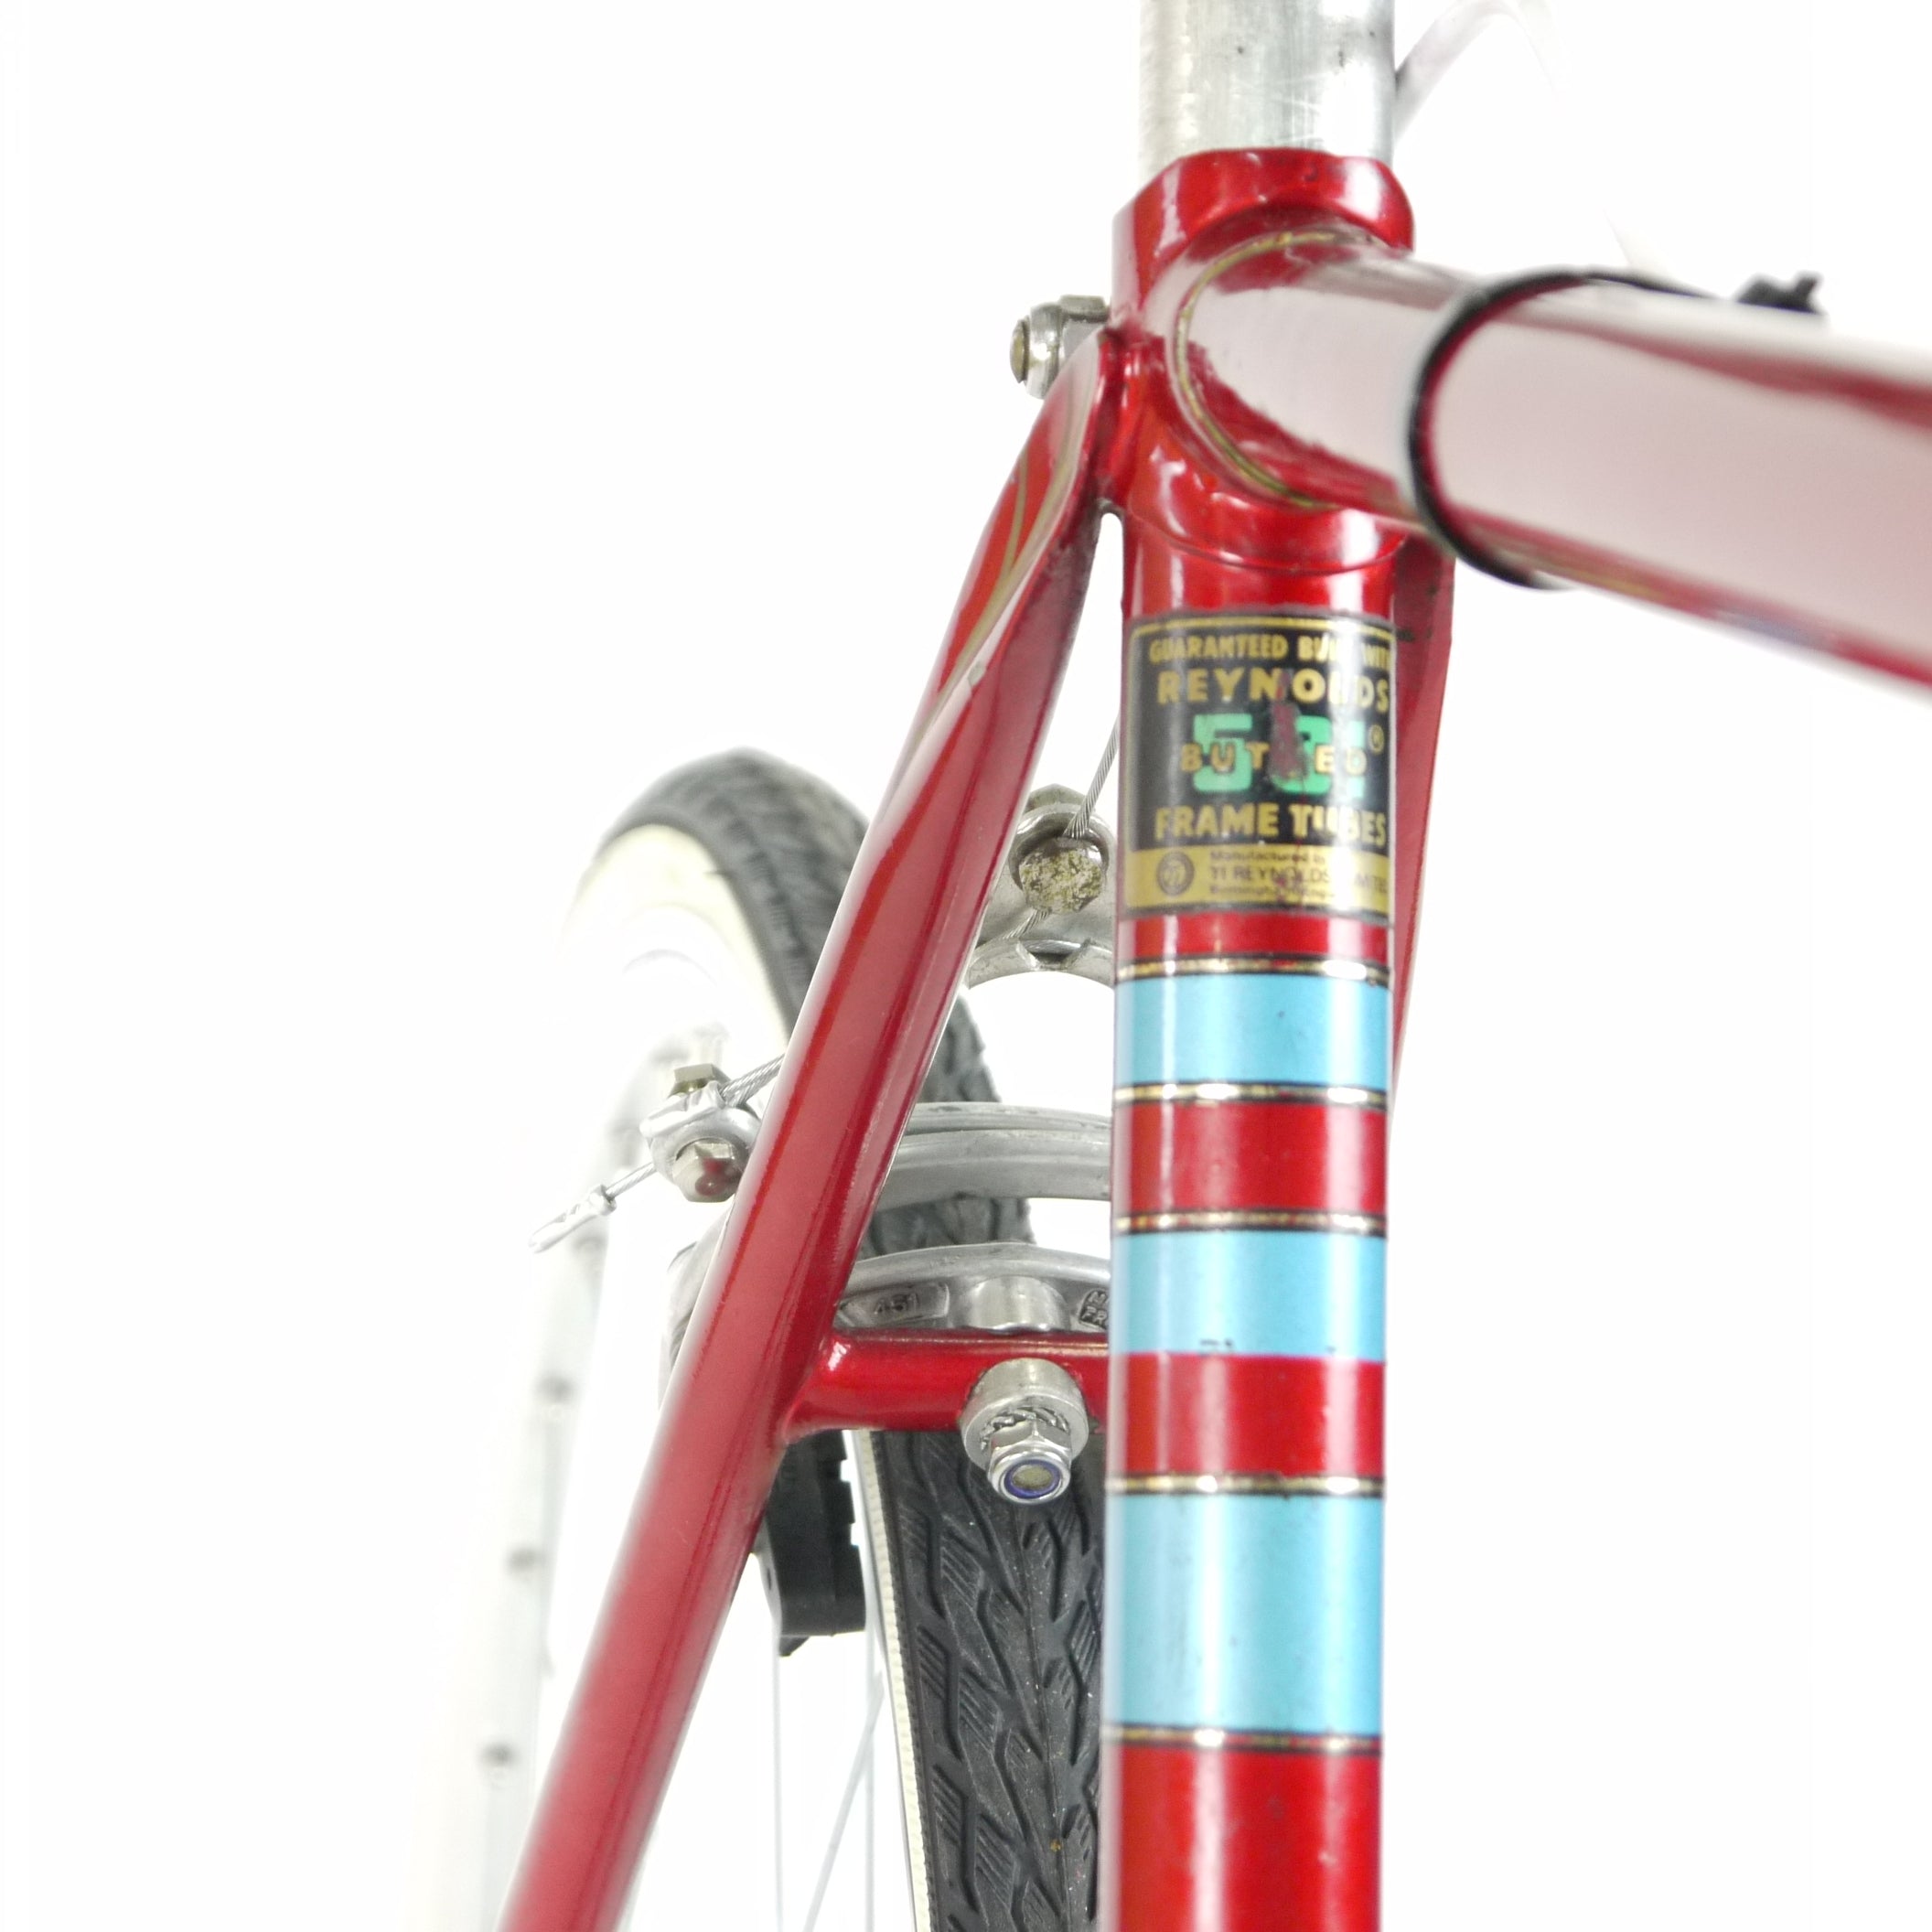 A red Dawes Mirage road bike's seat tube 